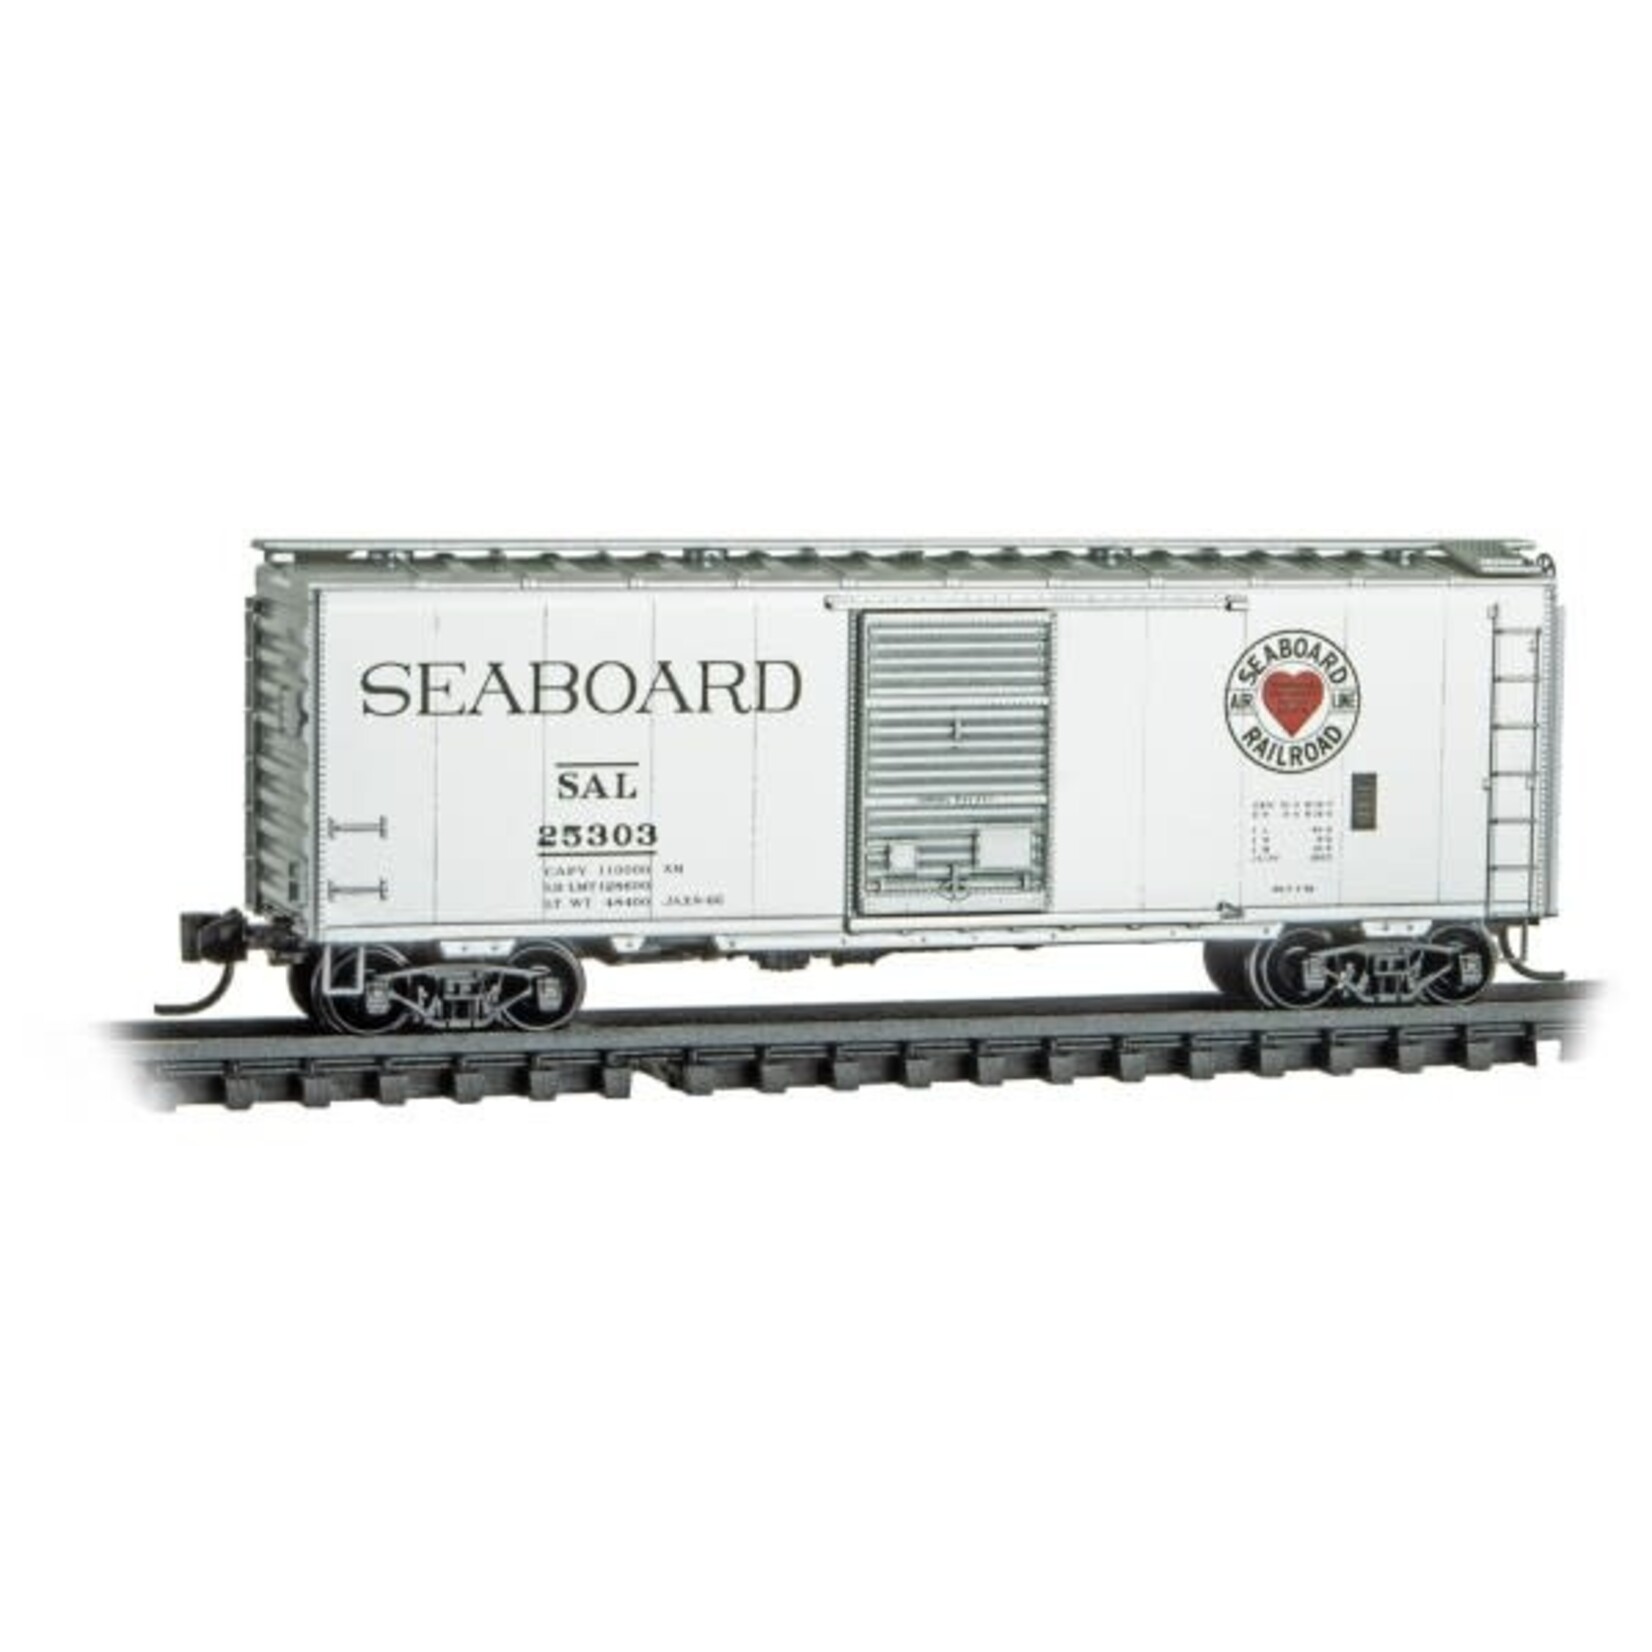 Micro Trains Line 02000387 N Seaboard Air Line 25303